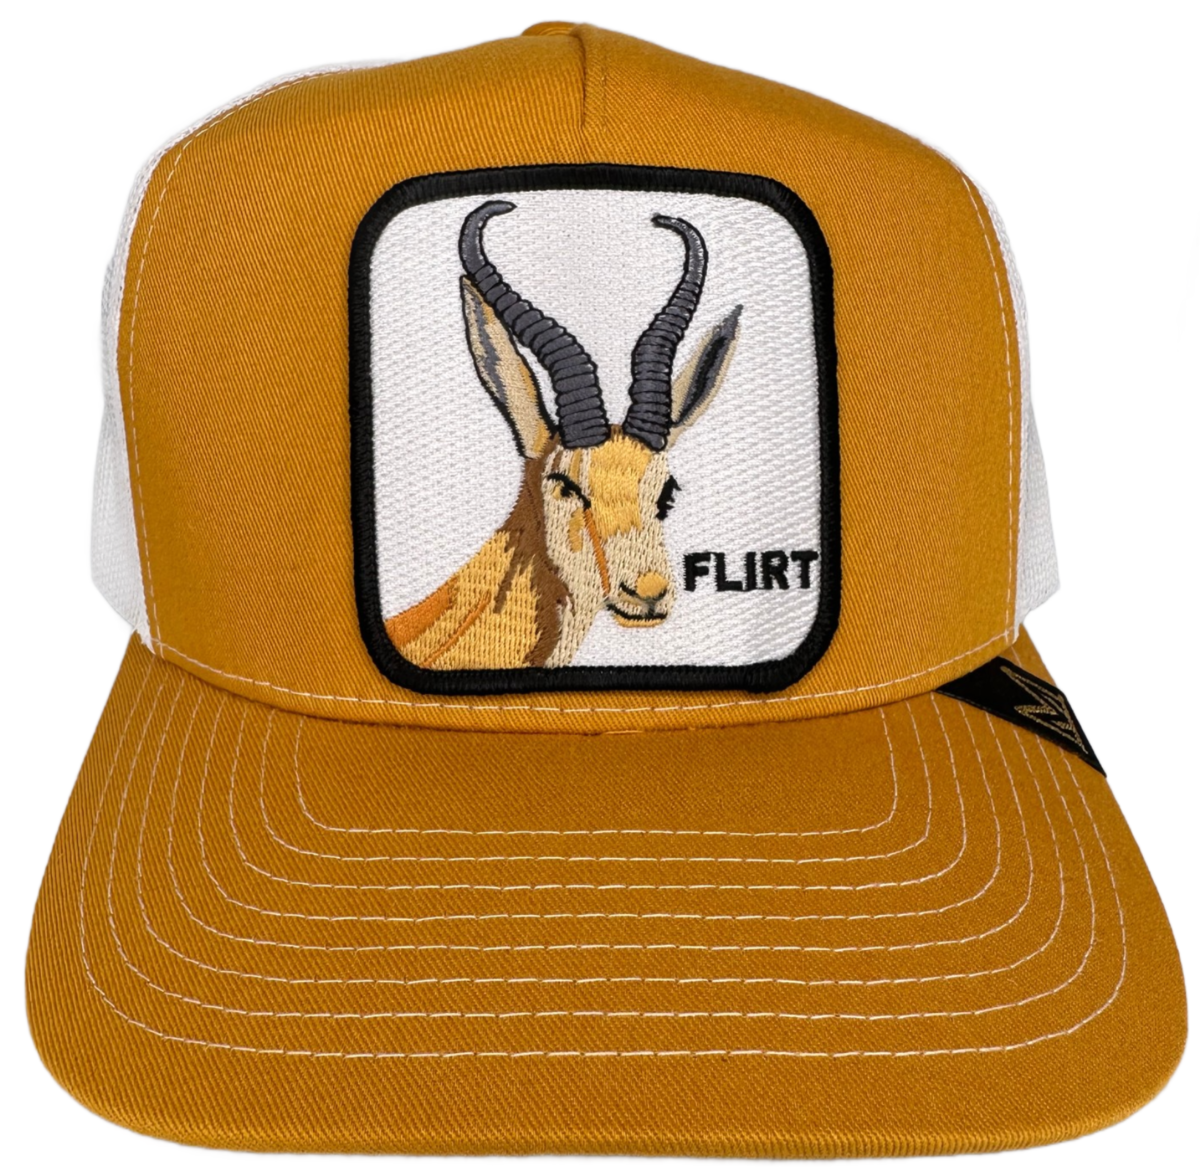 MV Dad Hats - Flirt Trucker Hat - Mustard/White